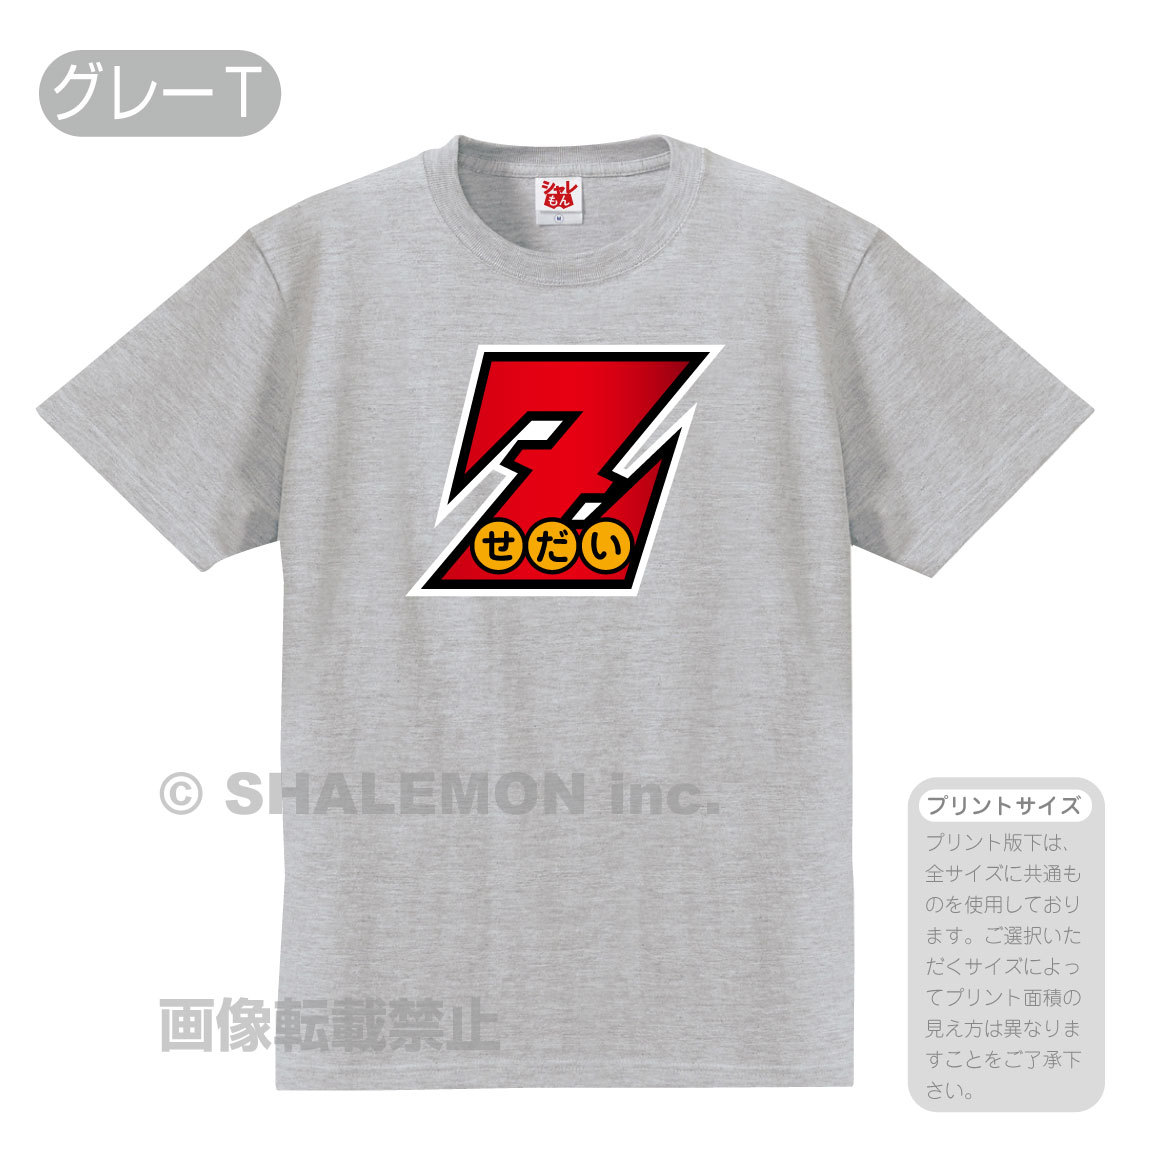 流行語 ノミネート 2021 おもしろ Tシャツ ( 選べる8カラー Z 世代 ) ジェネレーション...